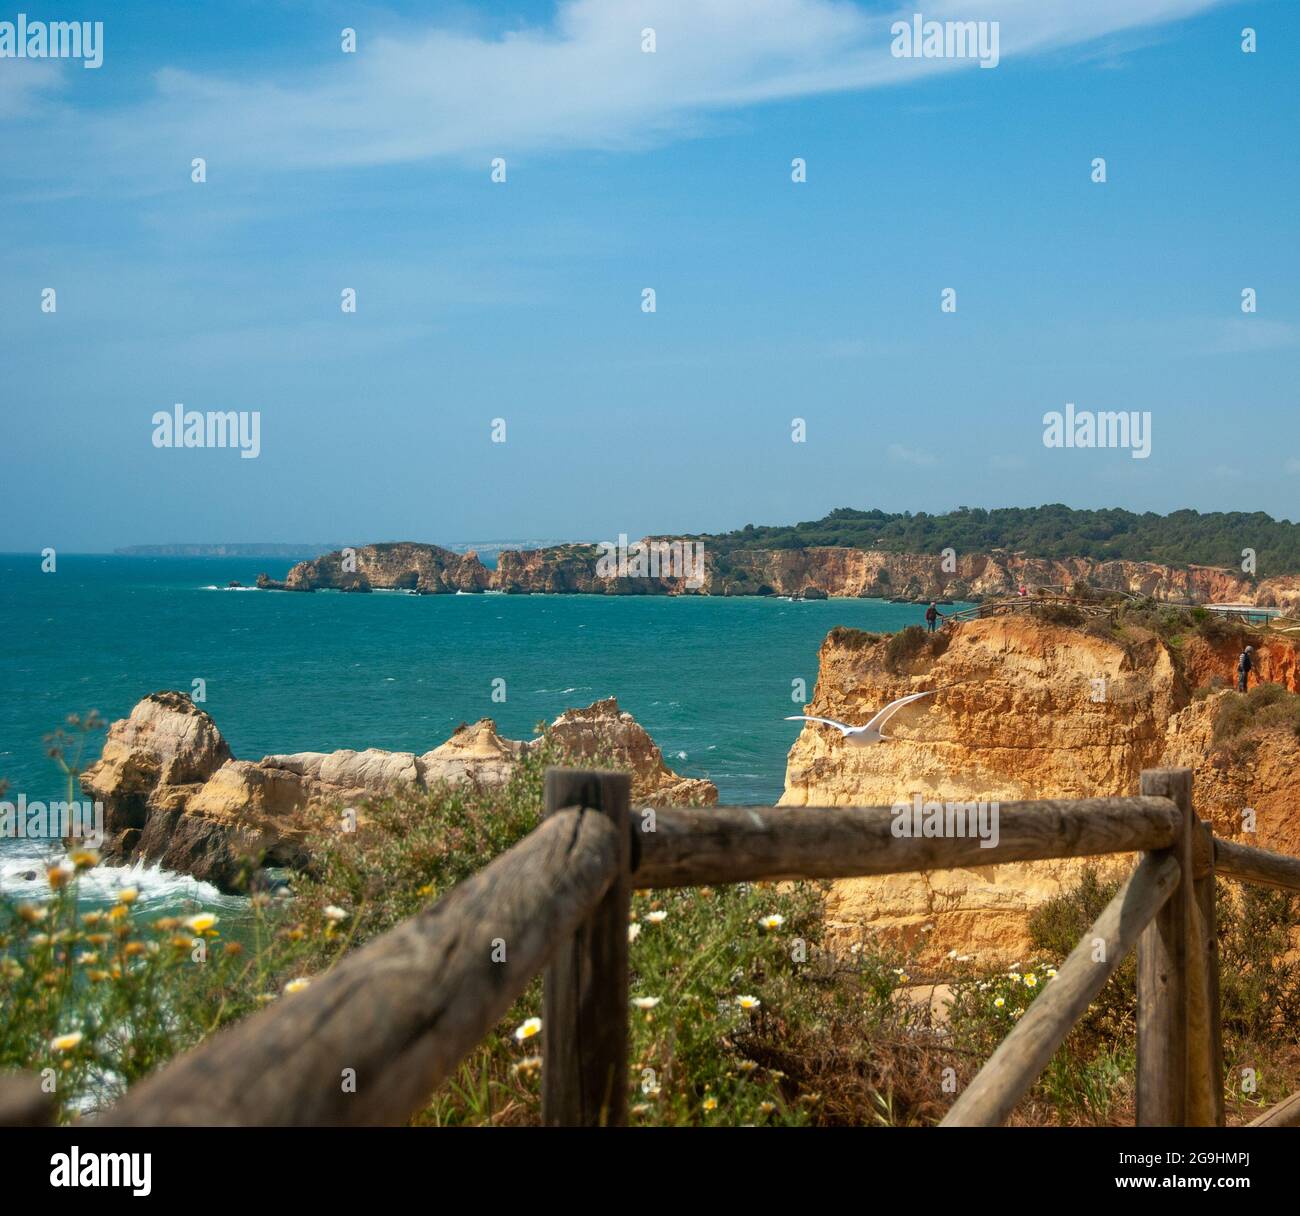 Küste der Algarve, Portugal mit Holztreppen entlang der Klippen - Platz für Text Stockfoto